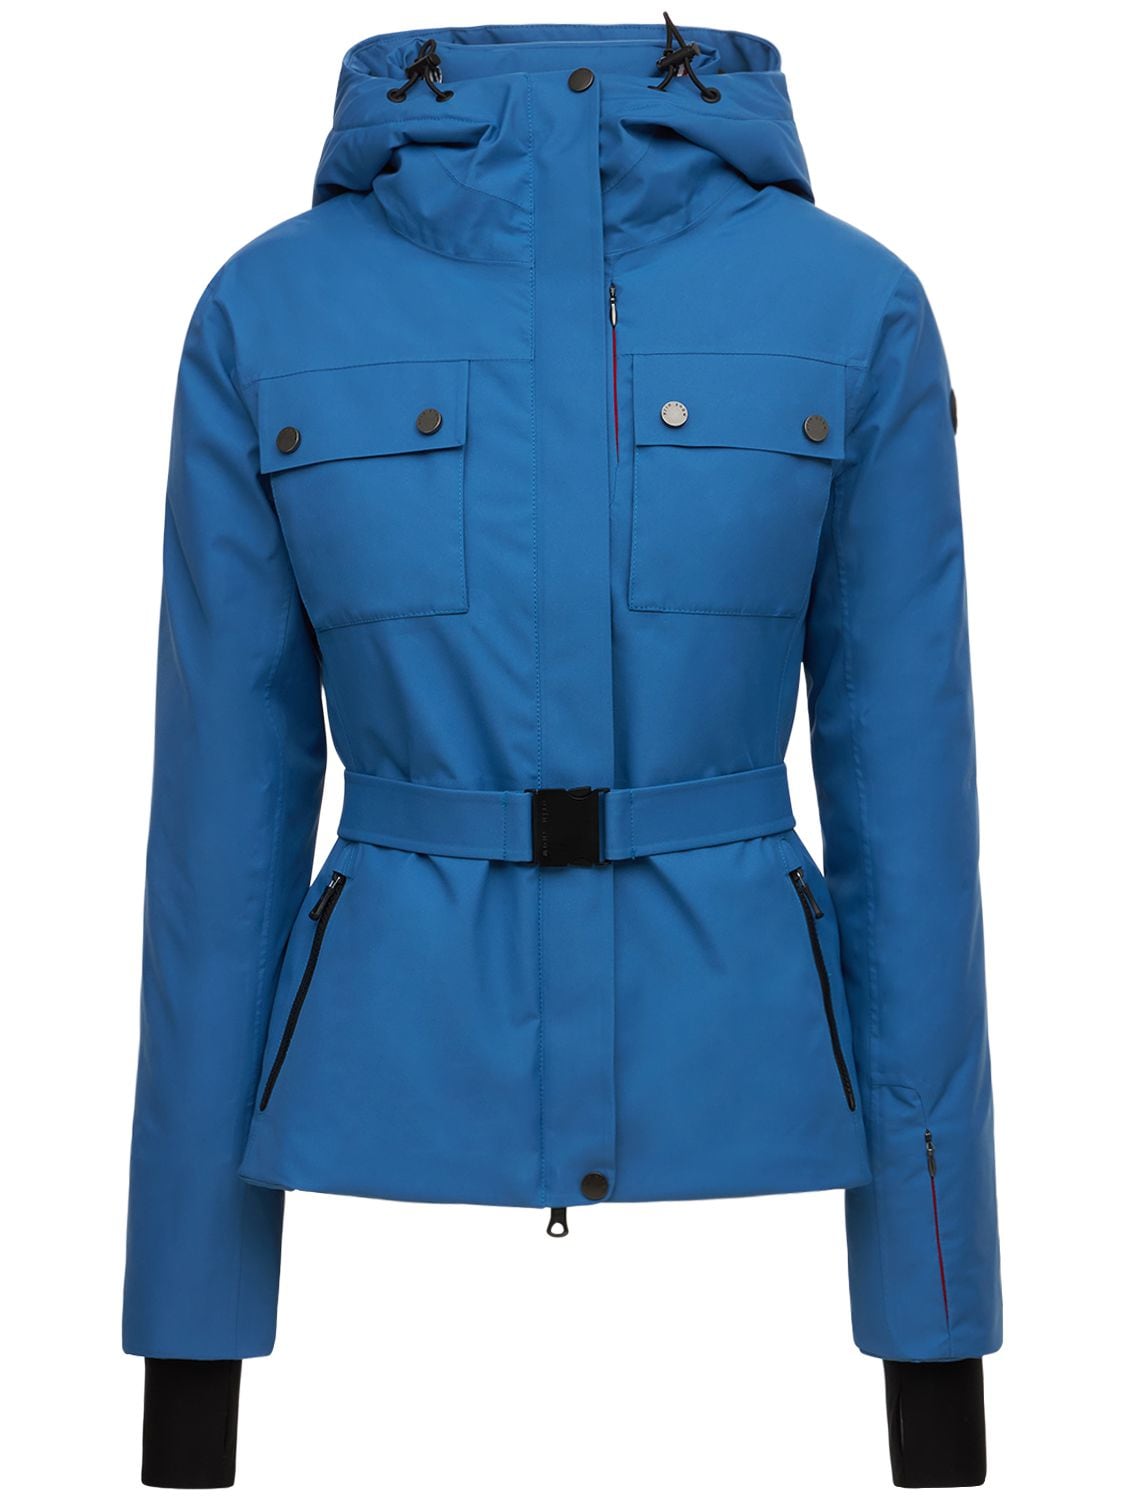 Diana Ski Jacket in Blue - Erin Snow